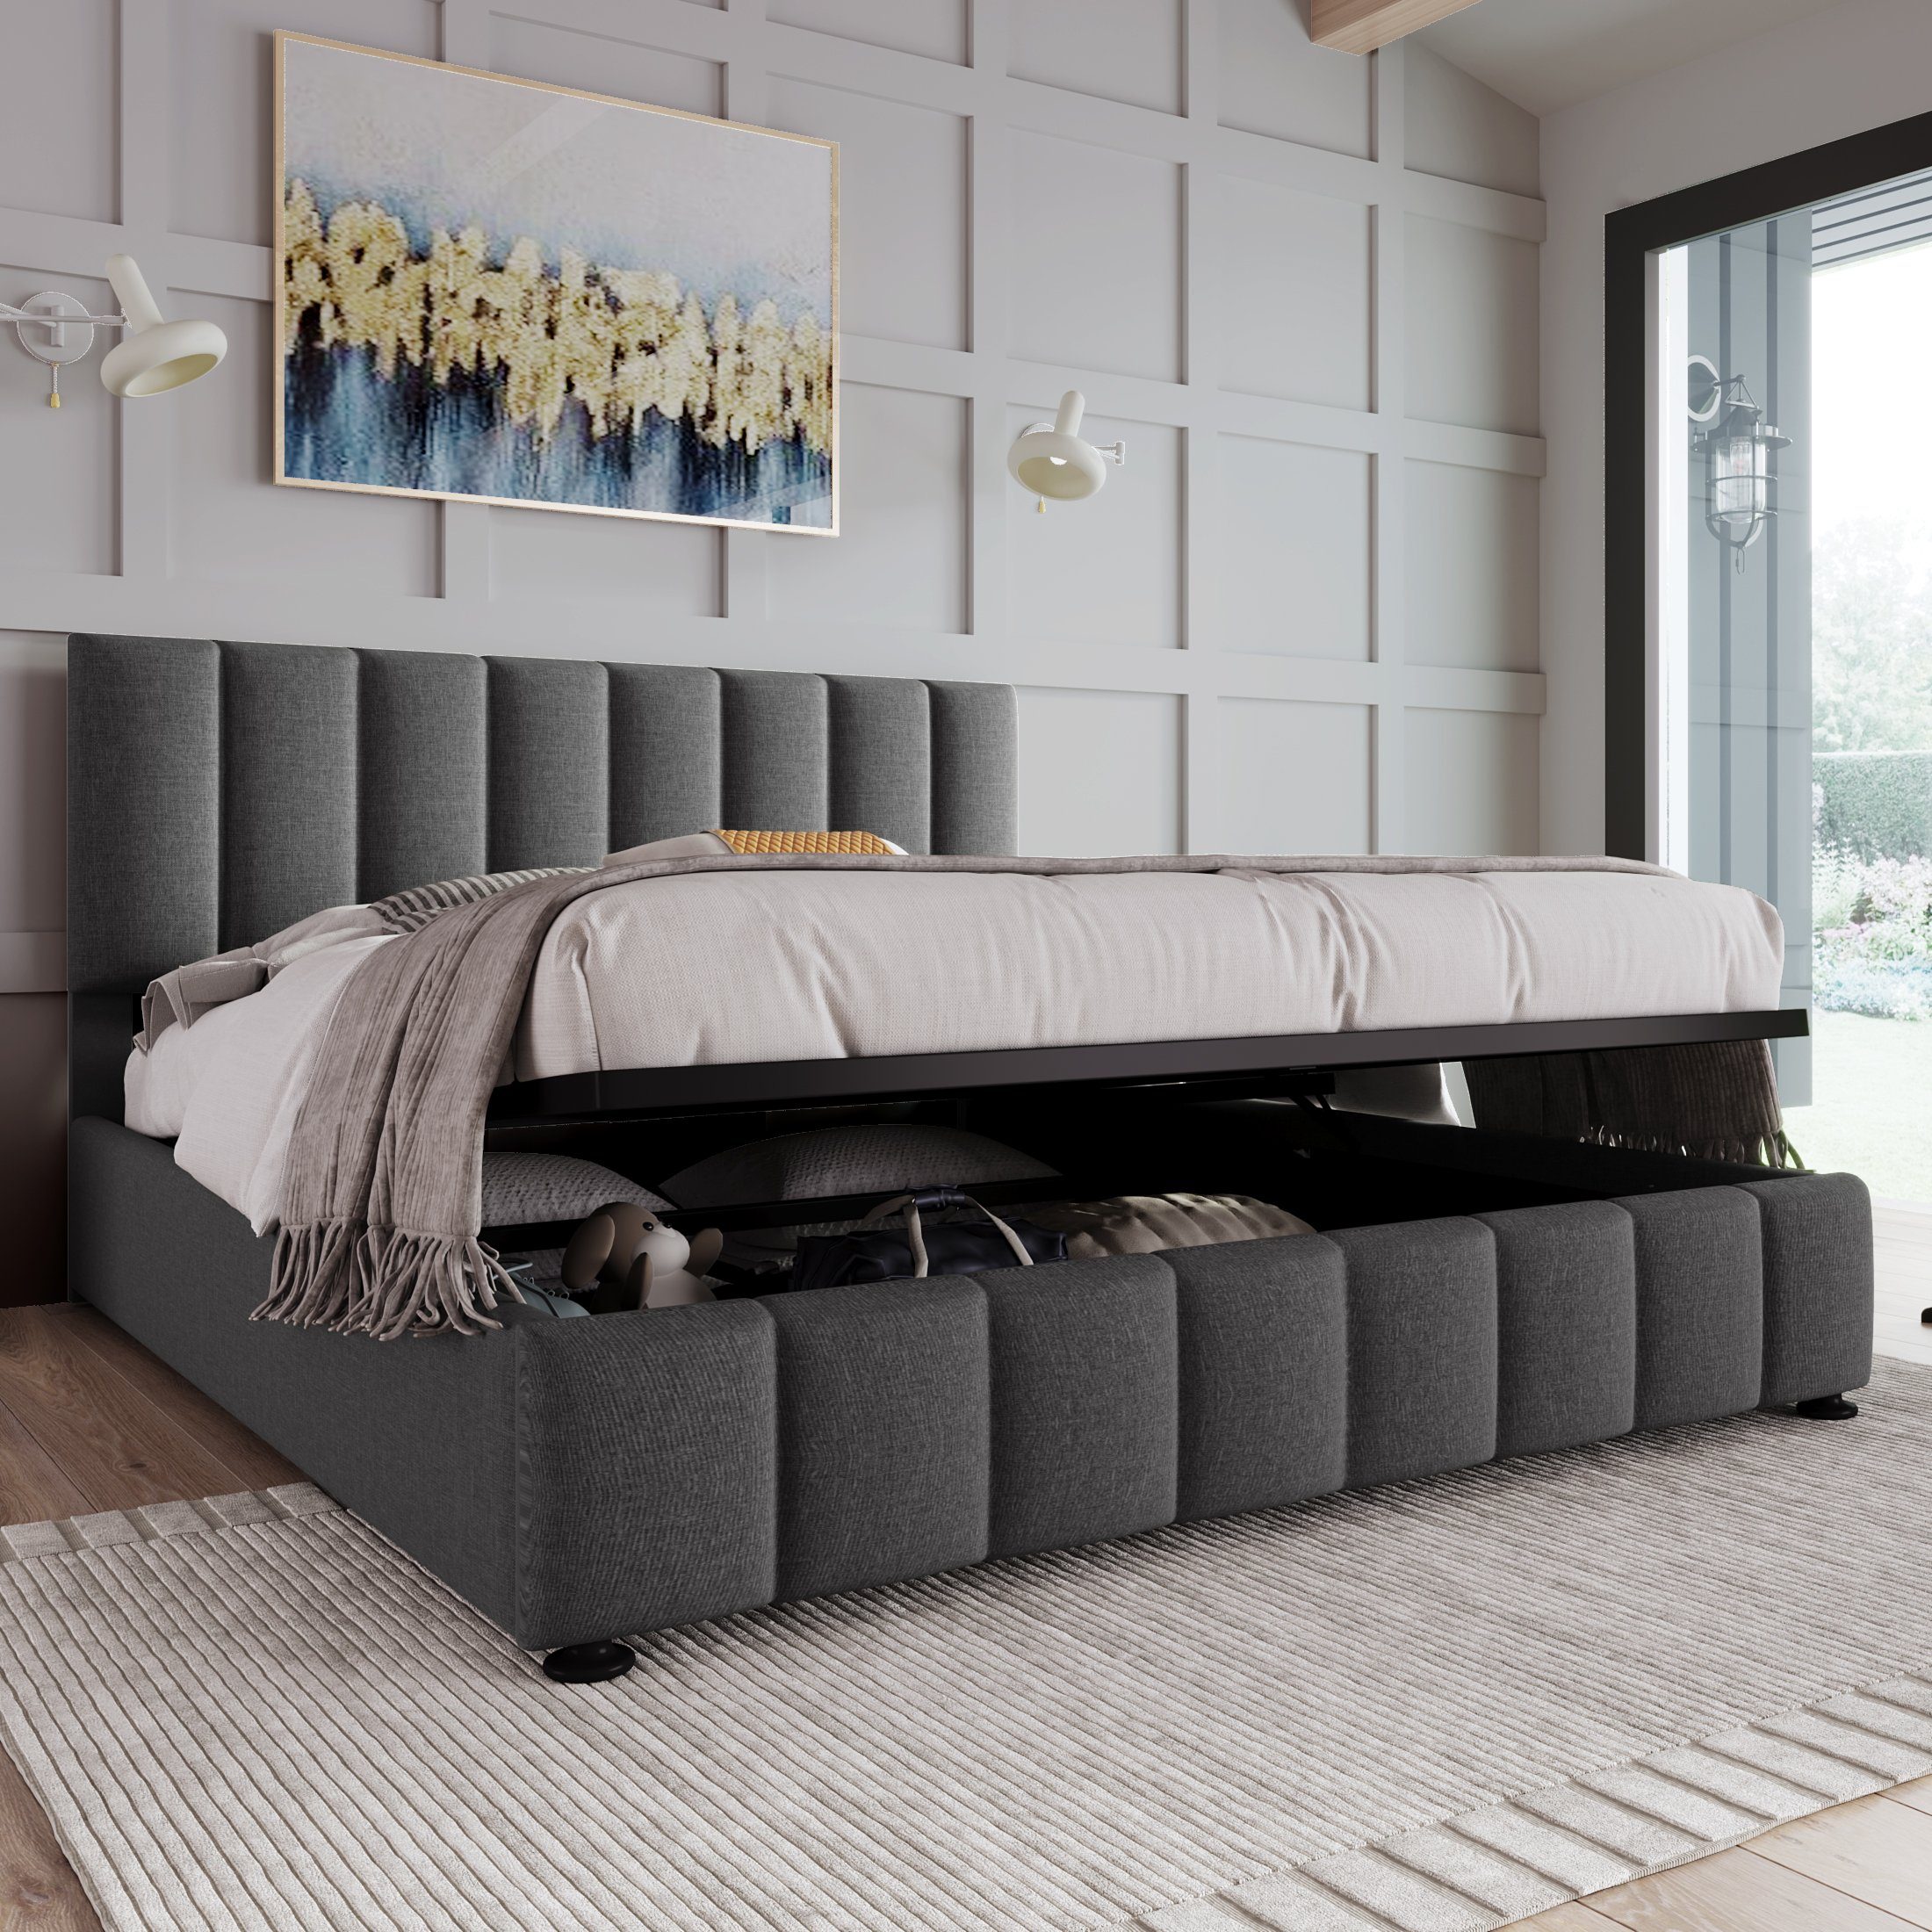 Ulife Polsterbett Doppelbett mit aus 140x200cm Kopfteil, großem verstellbares Lattenrost graues (Bett), Stauraum, und hydraulisches Metallrahmen, Leinenmaterial